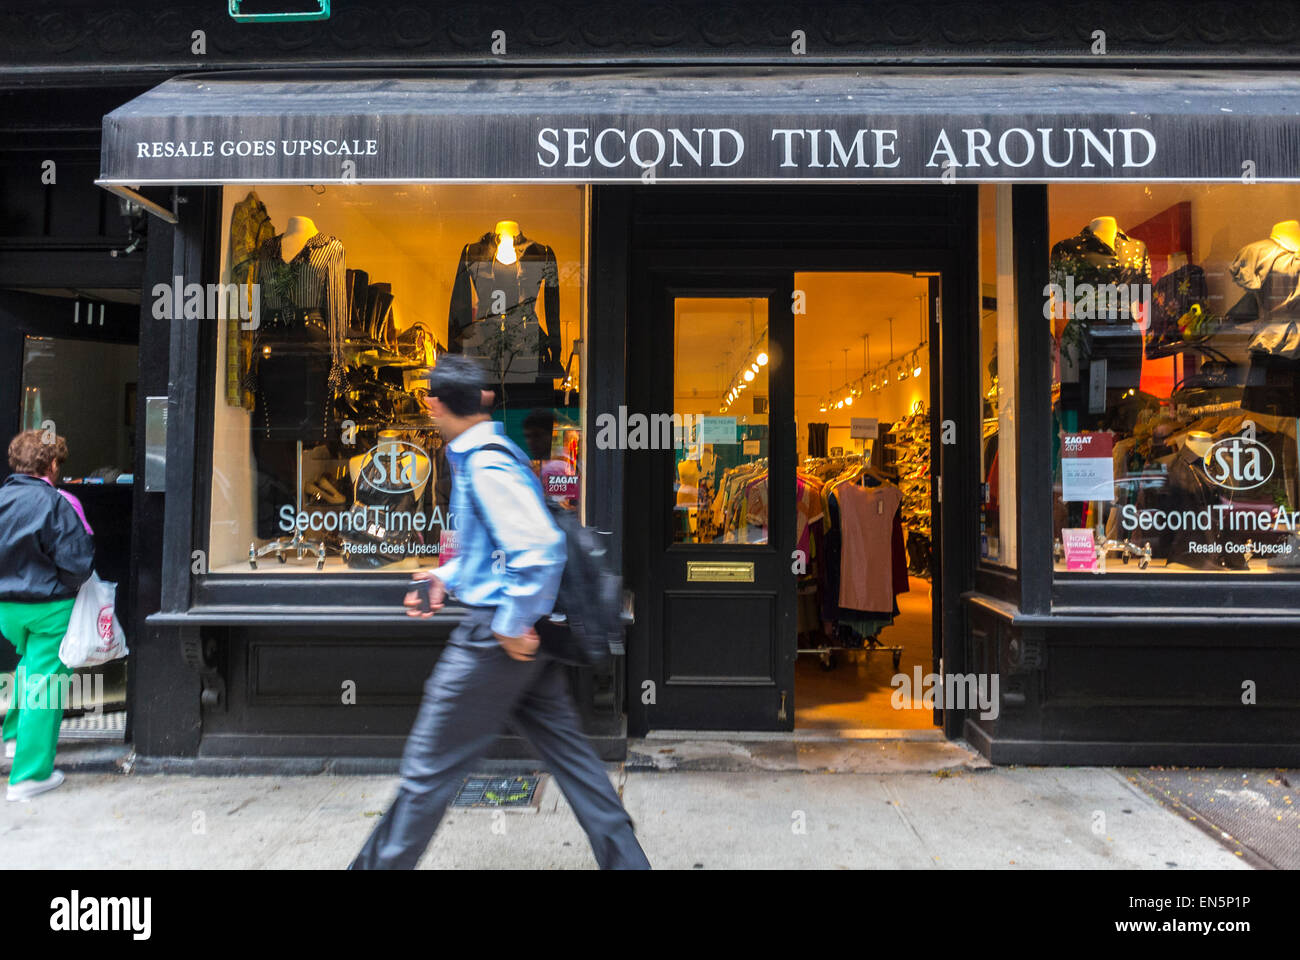 La ciudad de Nueva York, NY, EE.UU., el hombre caminando, tienda de ropa Vintage en Soho, tienda la ventana delantera en la calle 'Segundo tiempo alrededor' Fotografía de stock -